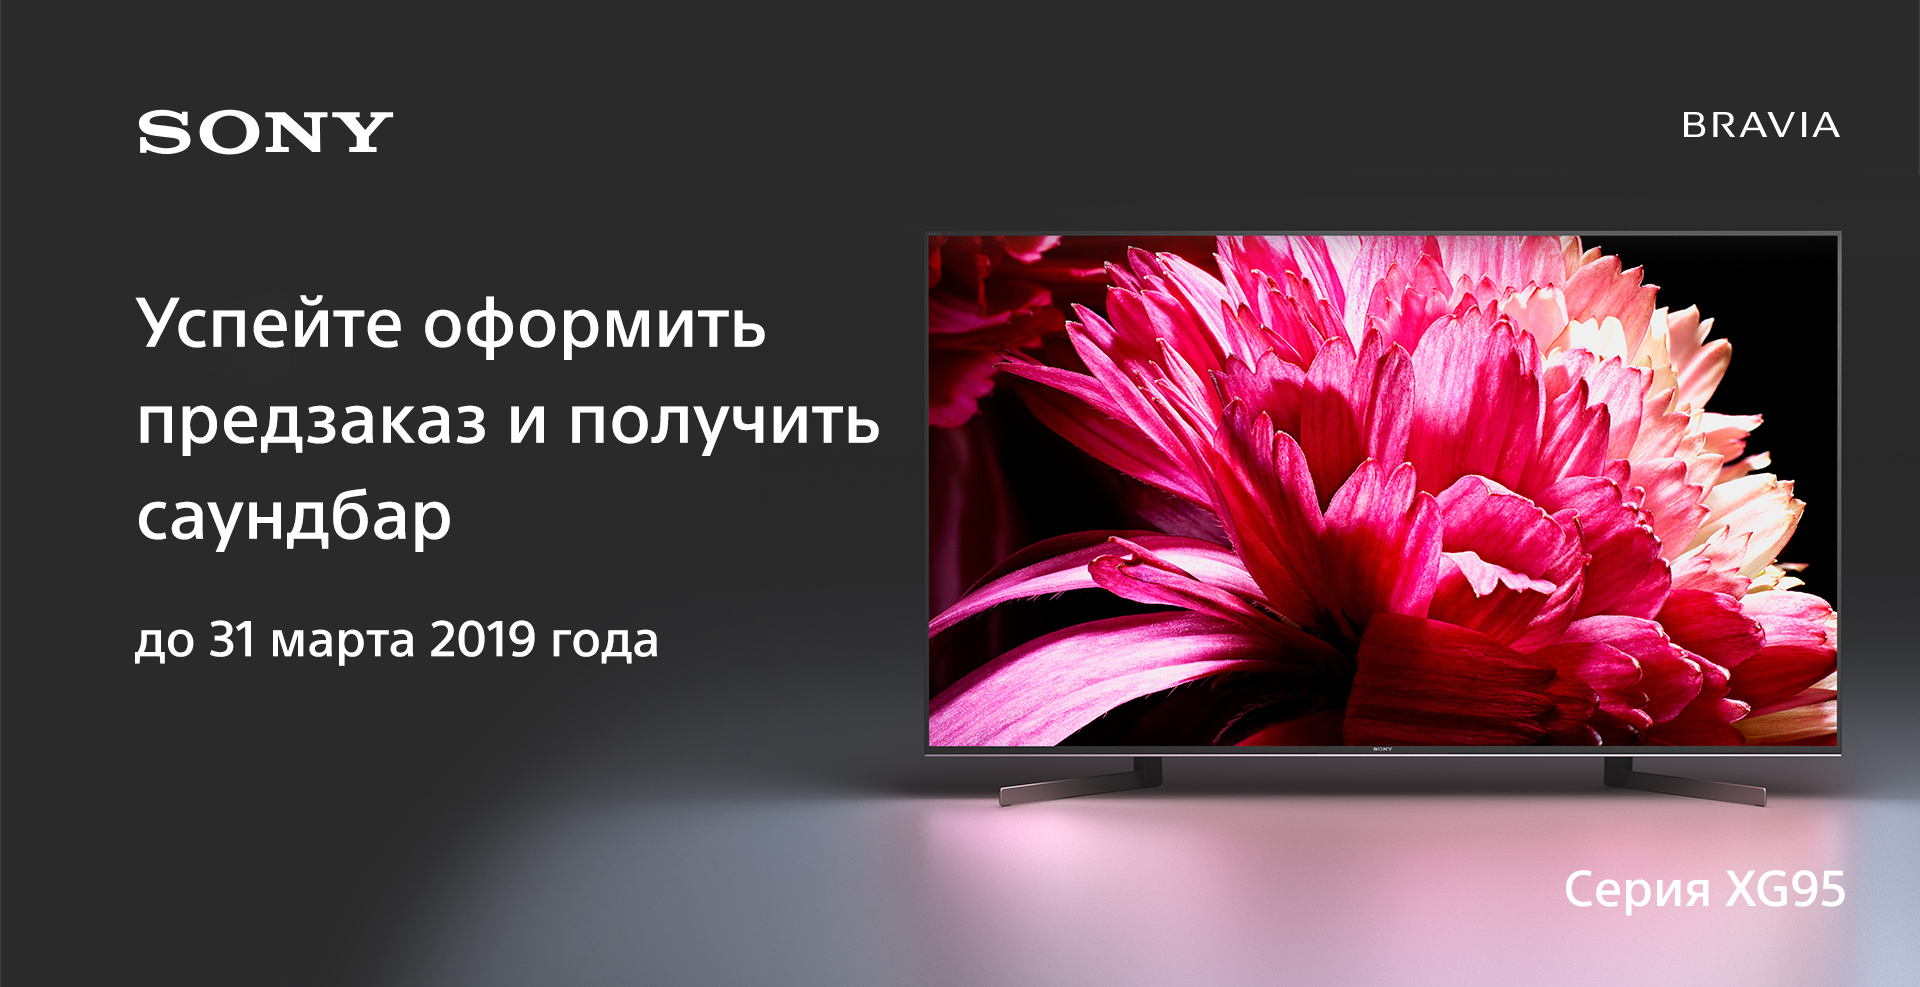 Оформите предзаказ на ТВ XG95 и получите саундбар в подарок -  выгода до 39 990 рублей!